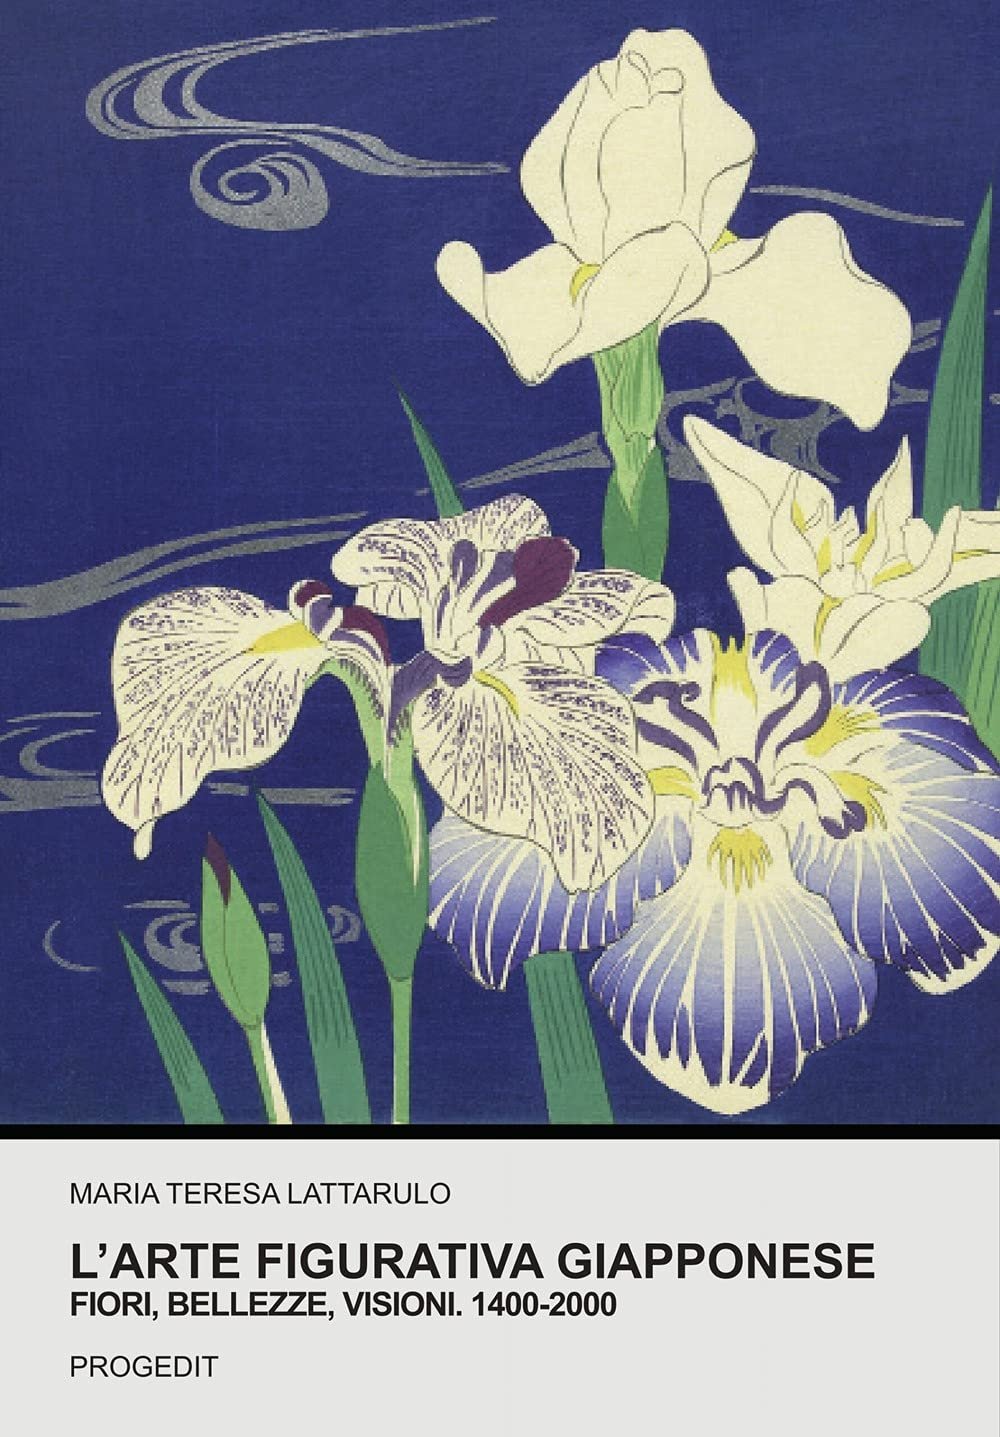 Maria Teresa Lattarulo – L'arte figurativa giapponese. Fiori, bellezze, visioni. 1400 2000 (Progedit, Bari 2021)